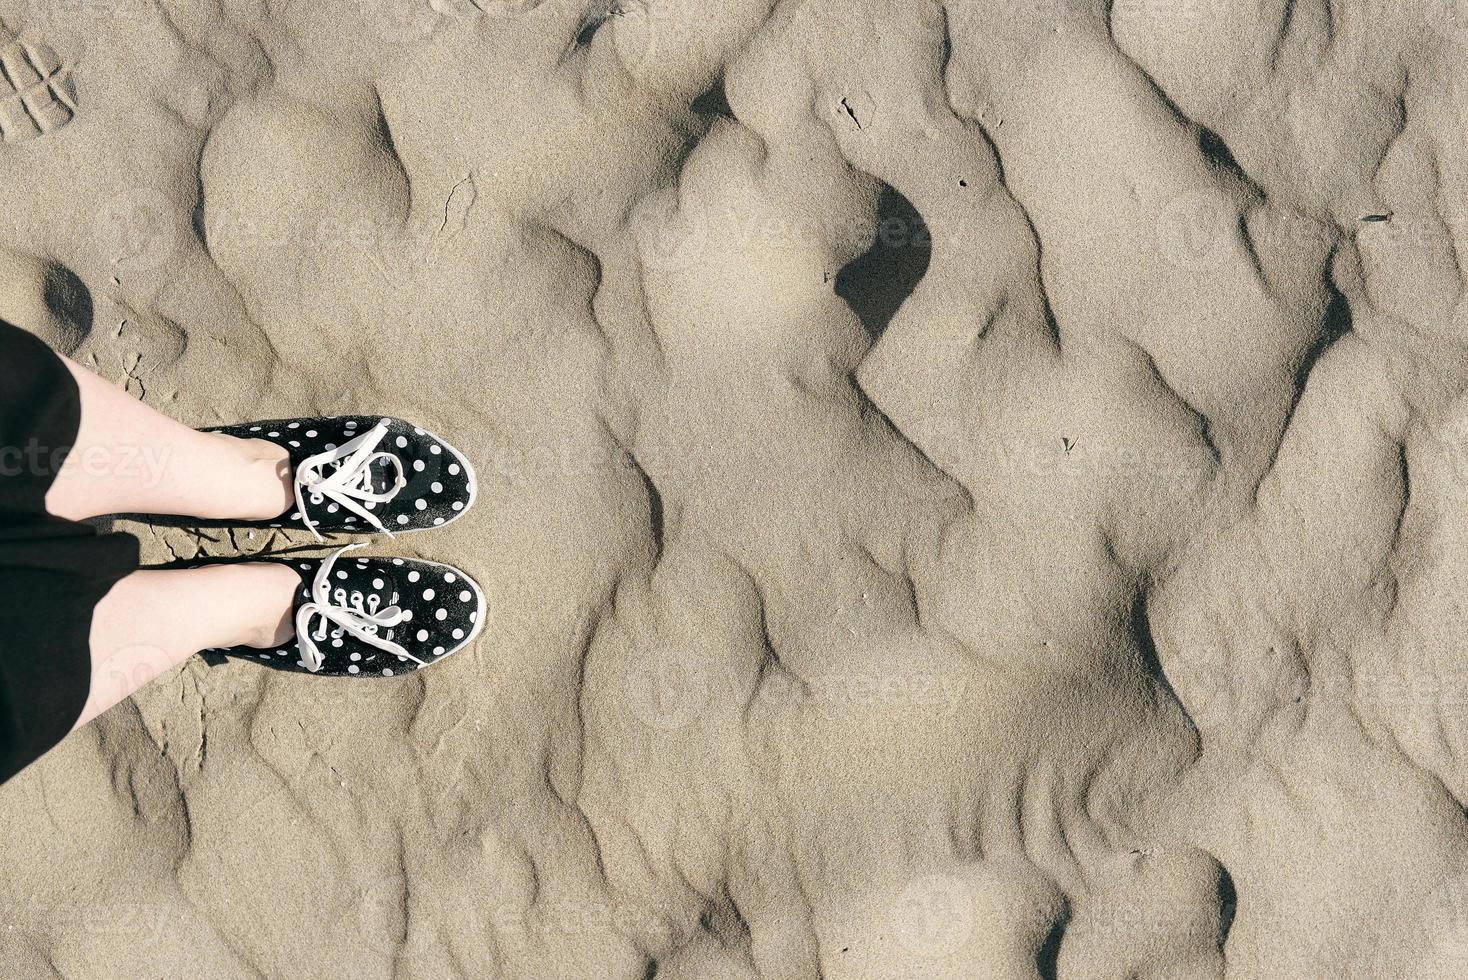 pies en zapatos de lunares en la arena en el desierto foto